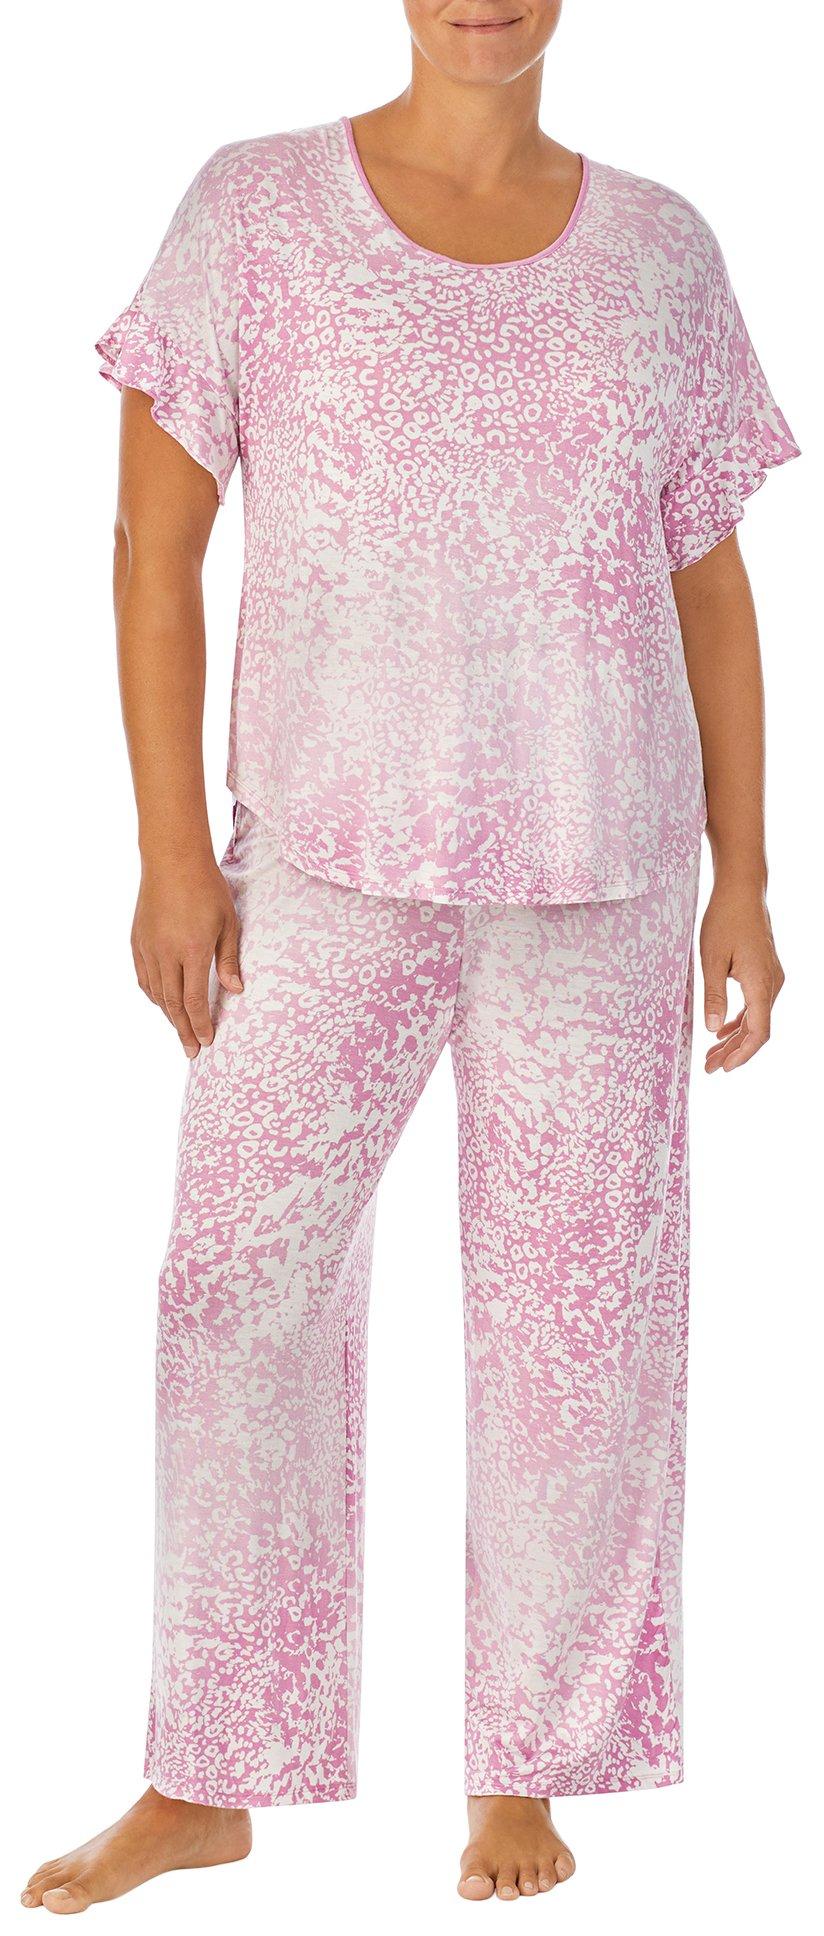 Ellen Tracy Womens 2-Pc. Floral Top & Pants Sleep Set | Bealls Florida